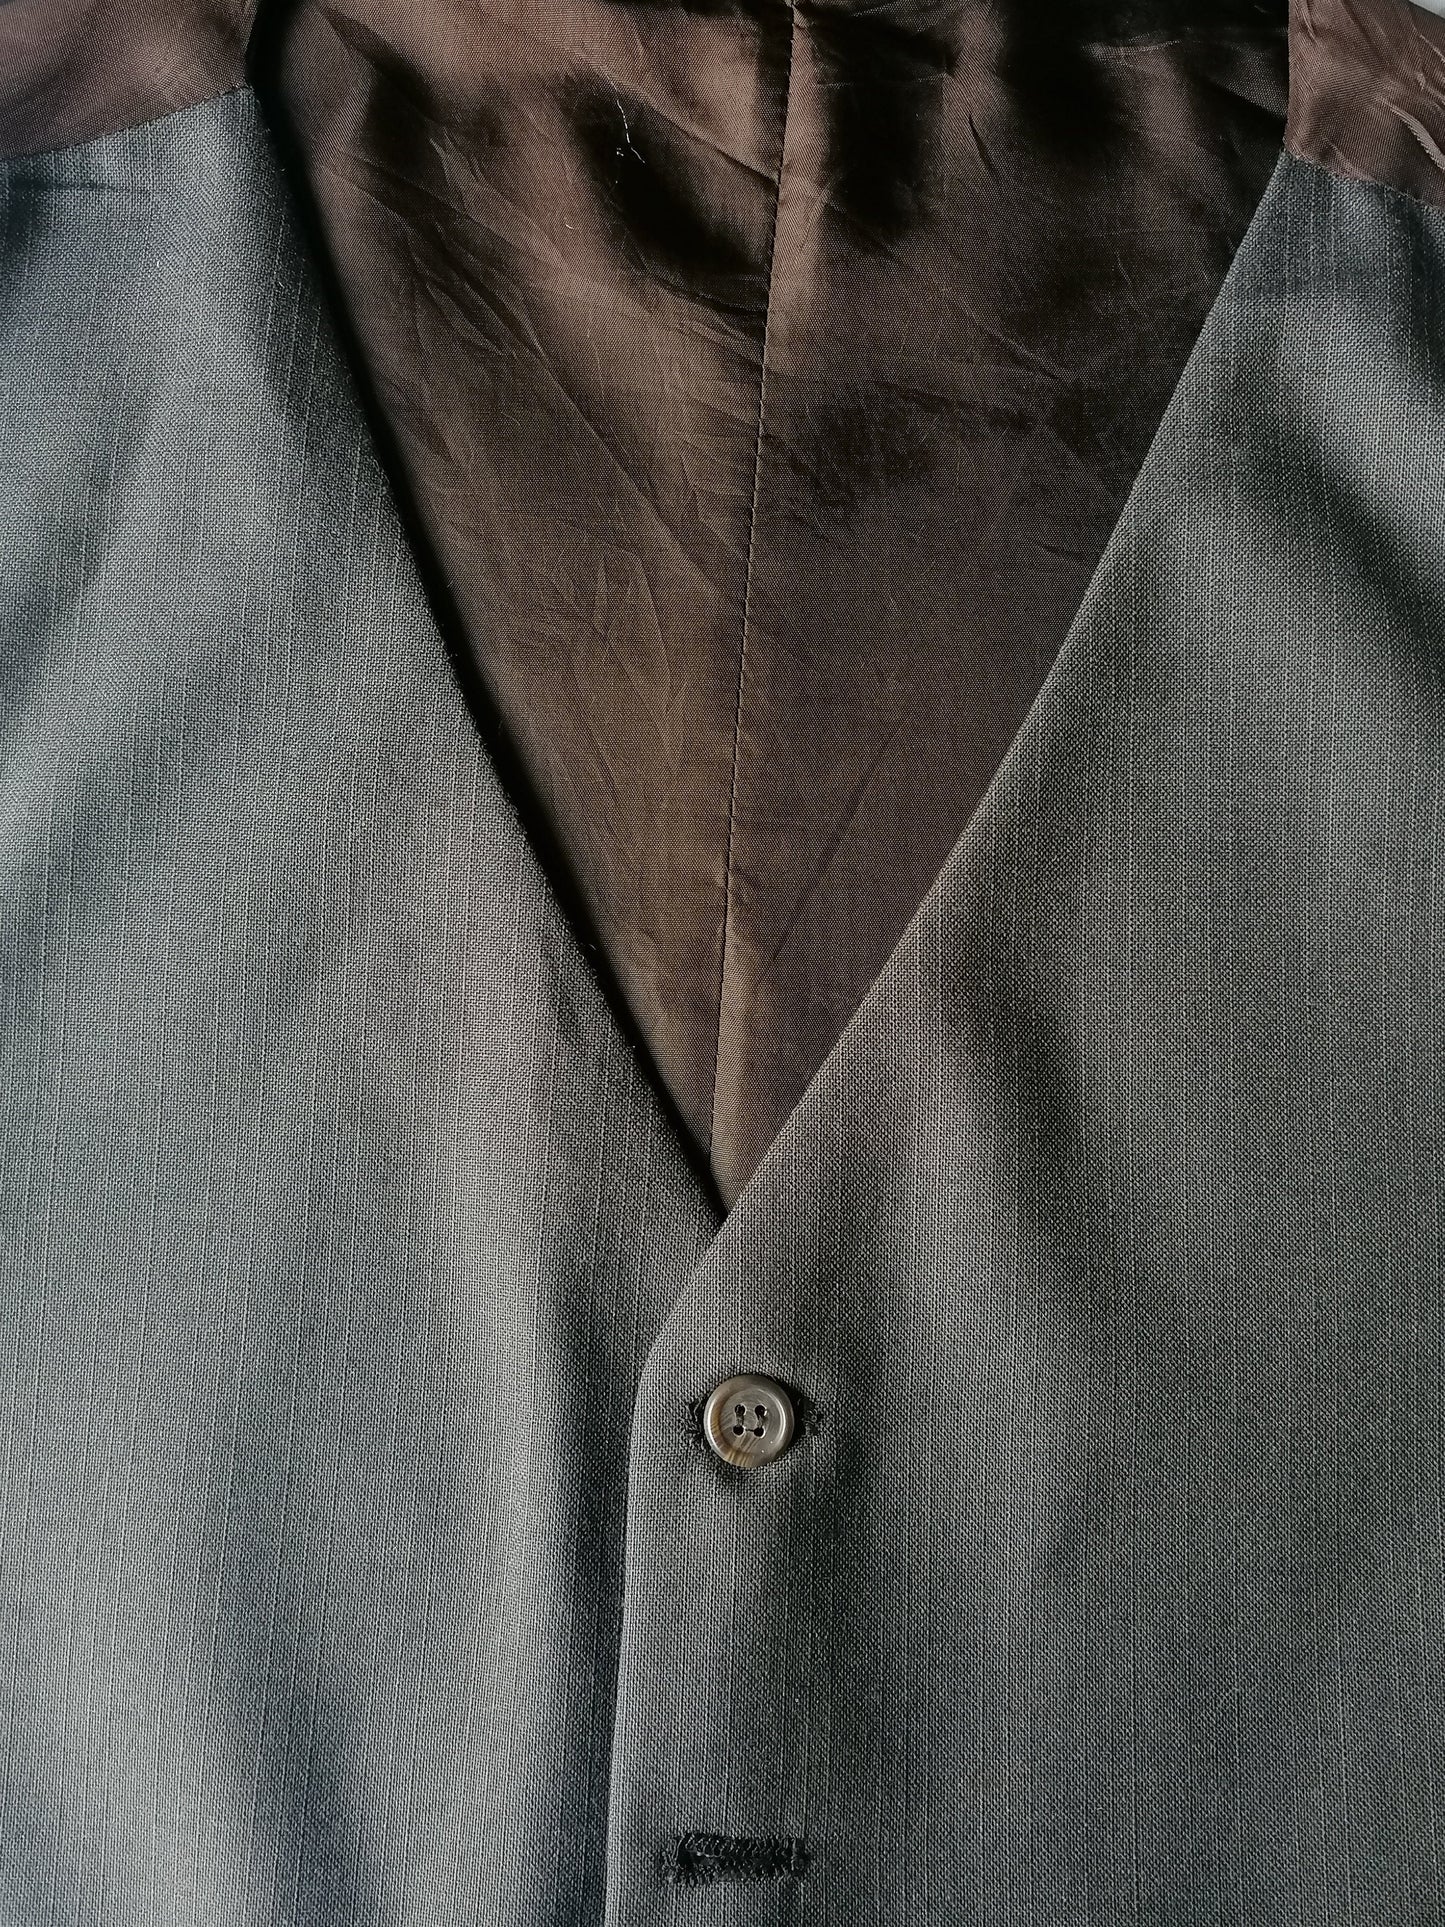 Woolen waistcoat. Brown striped motif. Size L. #298